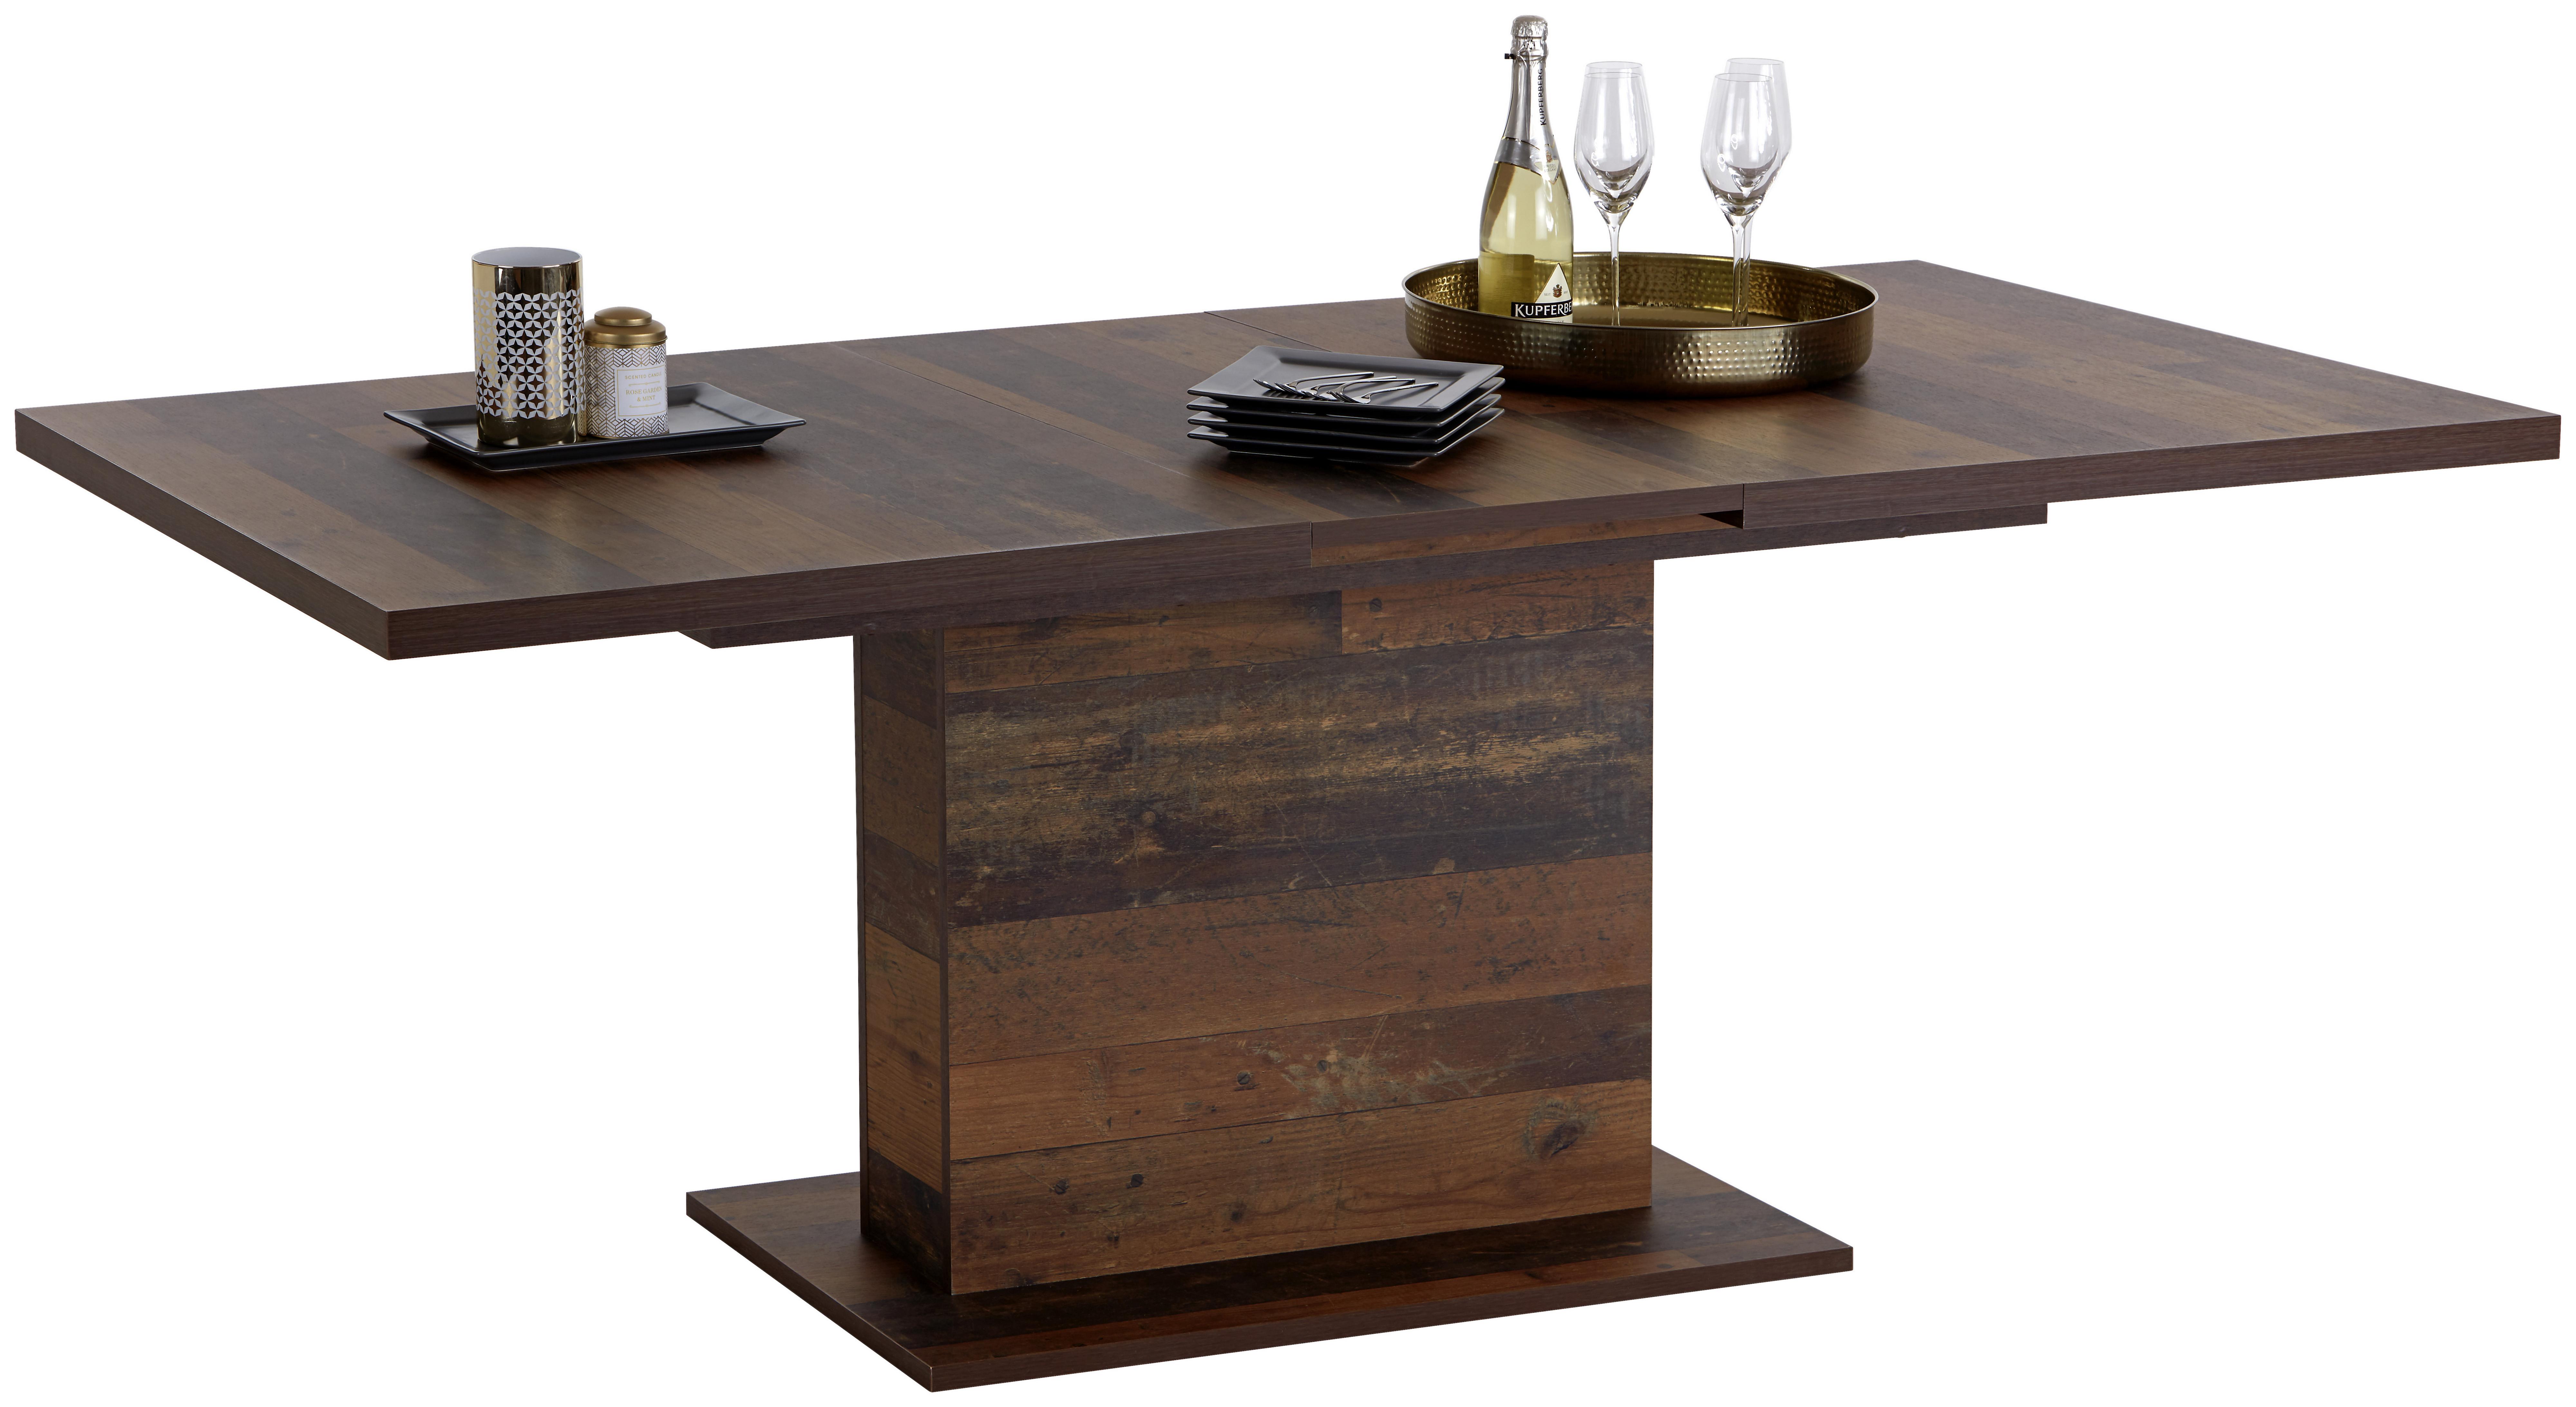 Výsuvný Stůl Ontario 160 Az - barvy dubu, Moderní, kompozitní dřevo (160-200/76/90cm) - Ondega